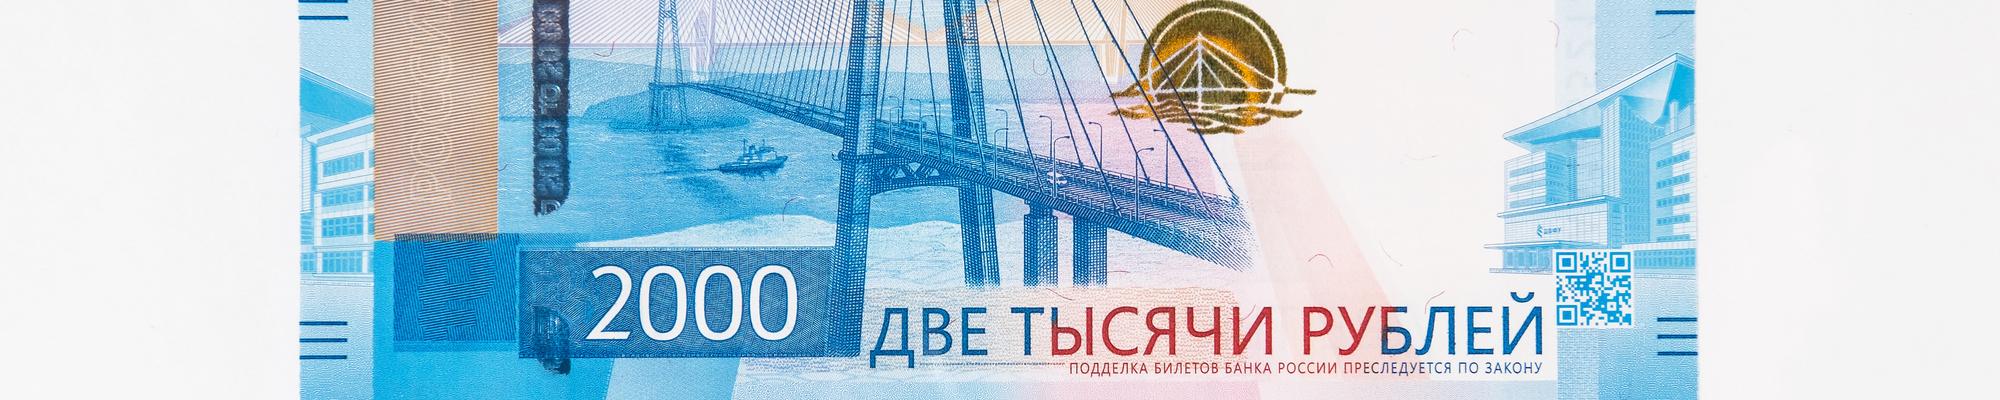 valery161-135.yandex.ru imagine de copertă a portofoliului